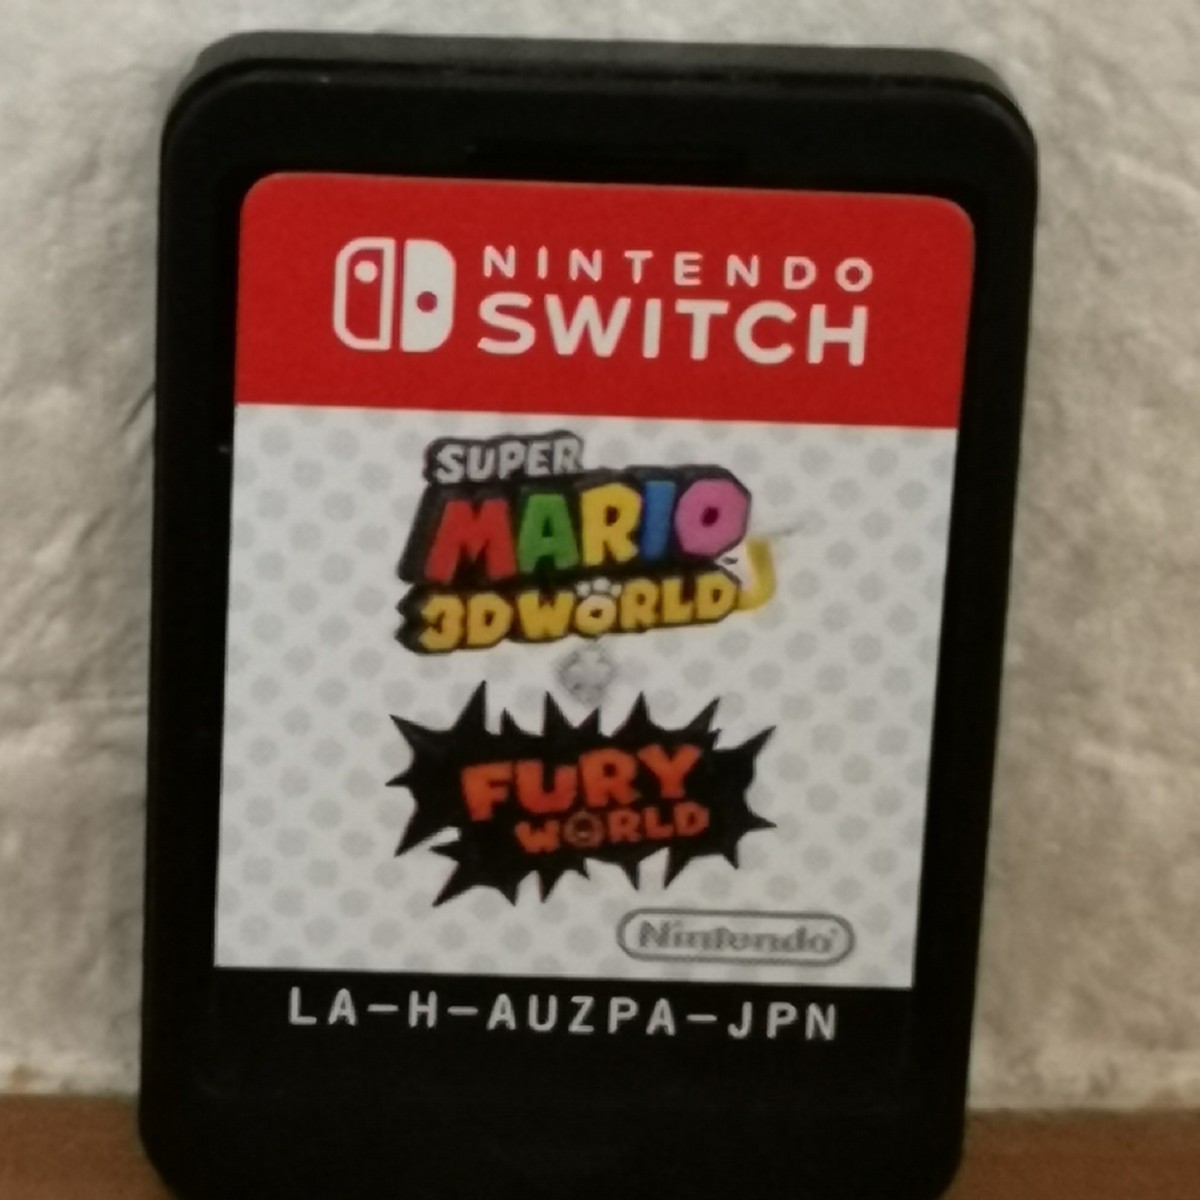 Nintendo Switch ニンテンドースイッチ マリオ3Dワールド ヒューリーワールド ソフト